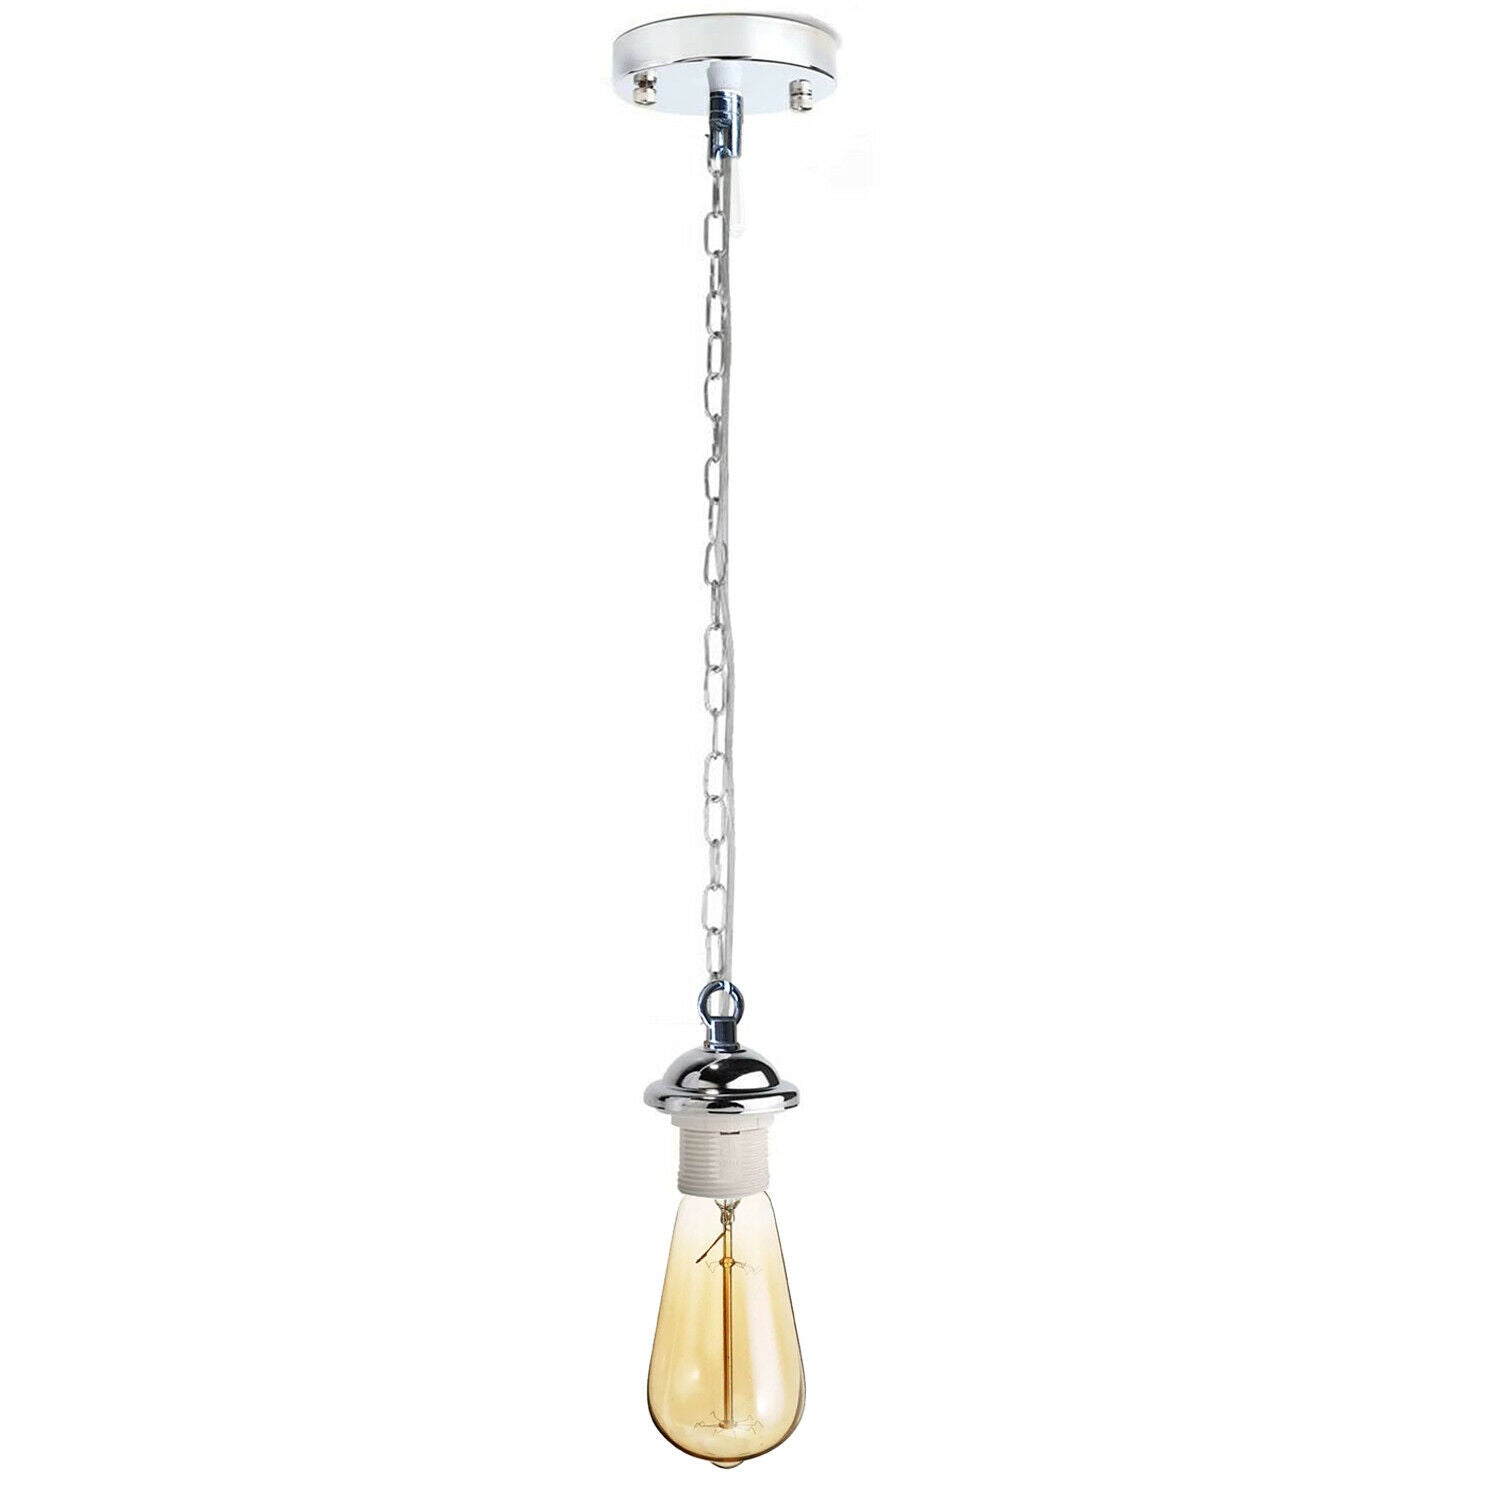 Chrome Metal Ceiing E27 Lamp Holder Pendant Light With Chain~1775 - LEDSone UK Ltd